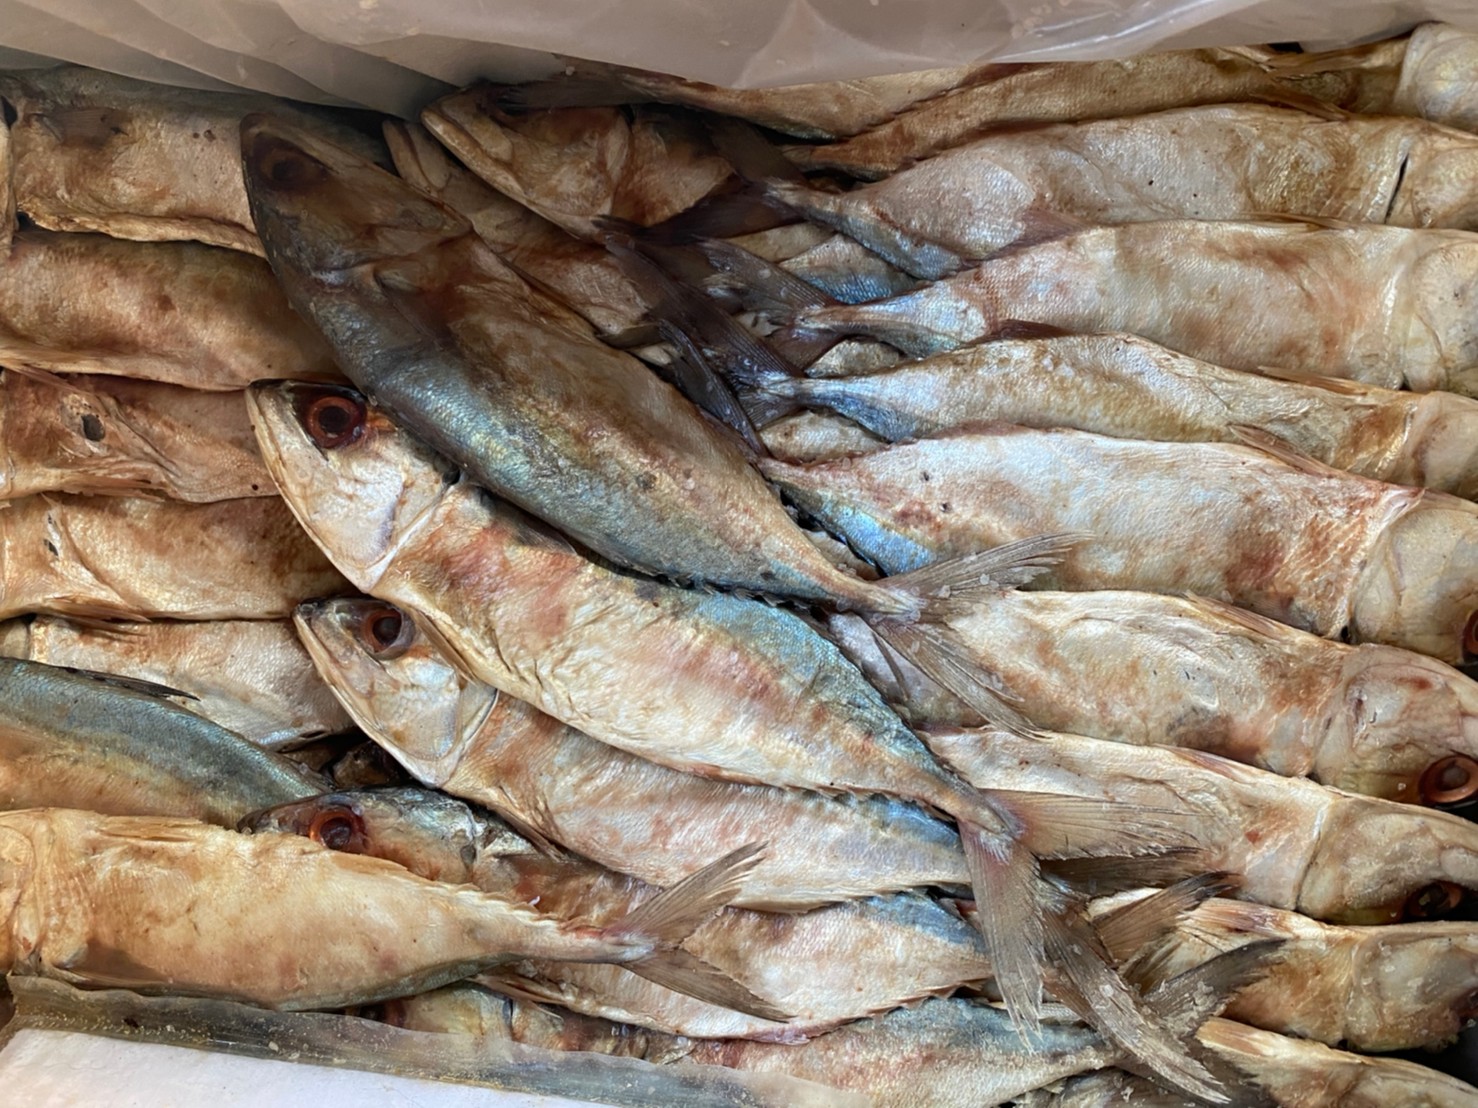 55 ปลาทูเค็ม/ปลาทูหอม นน 500 กรัม ราคาพิเศษ 55 บาท #แม่แขทะเลแห้ง /จัดส่ง ทูเค็ม ครึ่งโล/